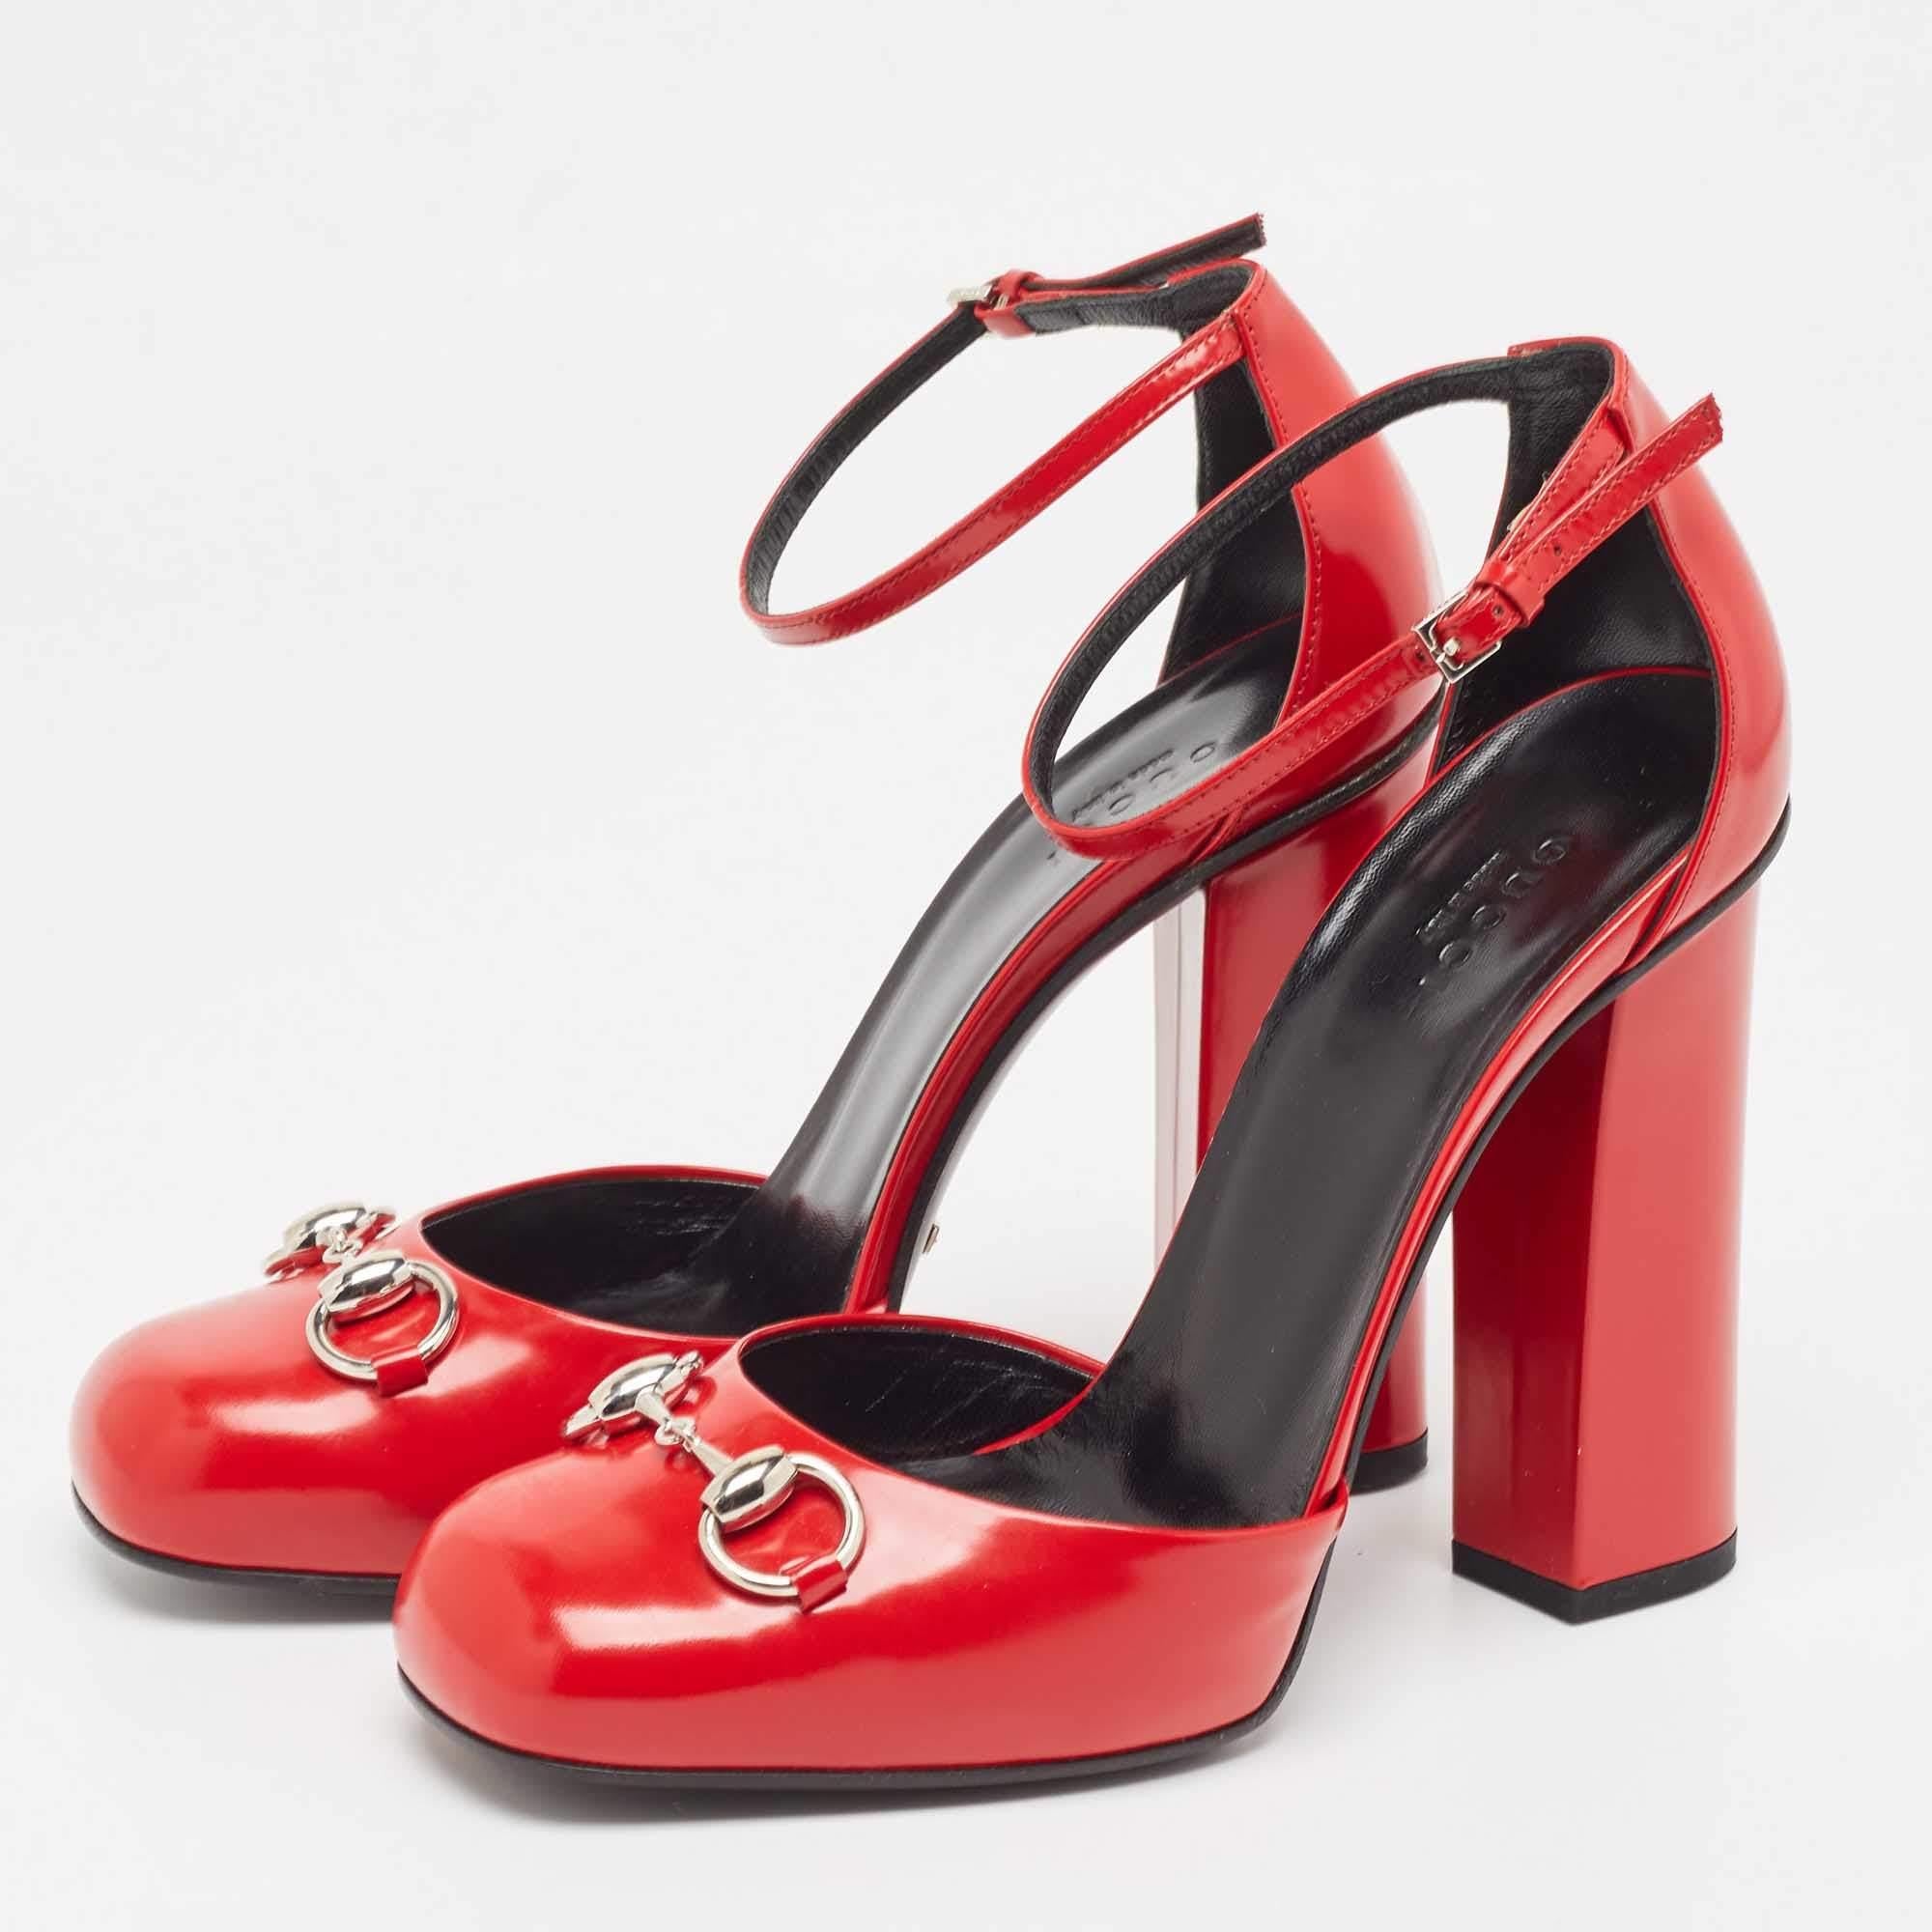 Parfaitement cousues et finies pour garantir un look et une coupe élégants, ces chaussures rouges Gucci sont un achat que vous aimerez arborer. Ils sont très beaux sur les pieds.

Comprend : Sac à poussière d'origine, boîte d'origine